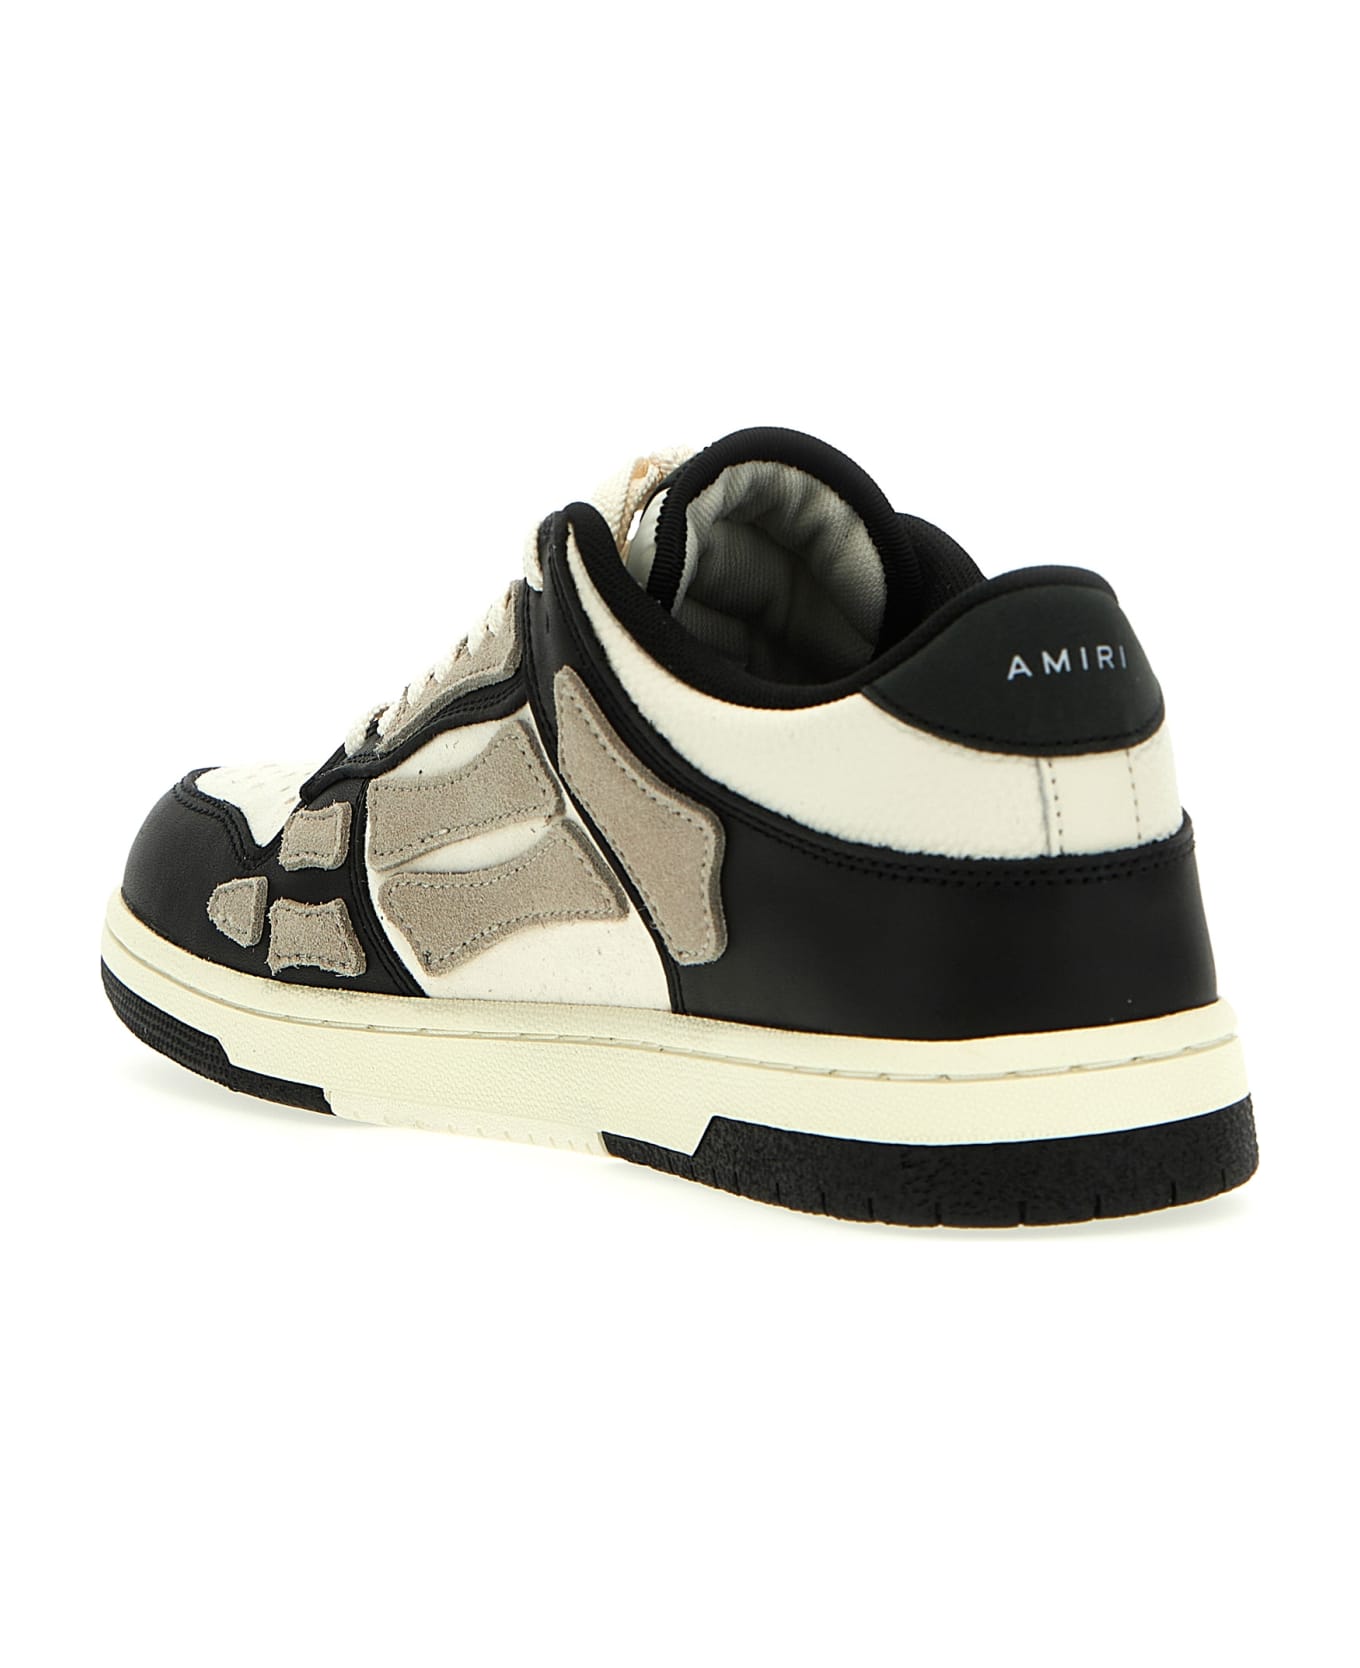 AMIRI 'skel' Sneakers - White/Black